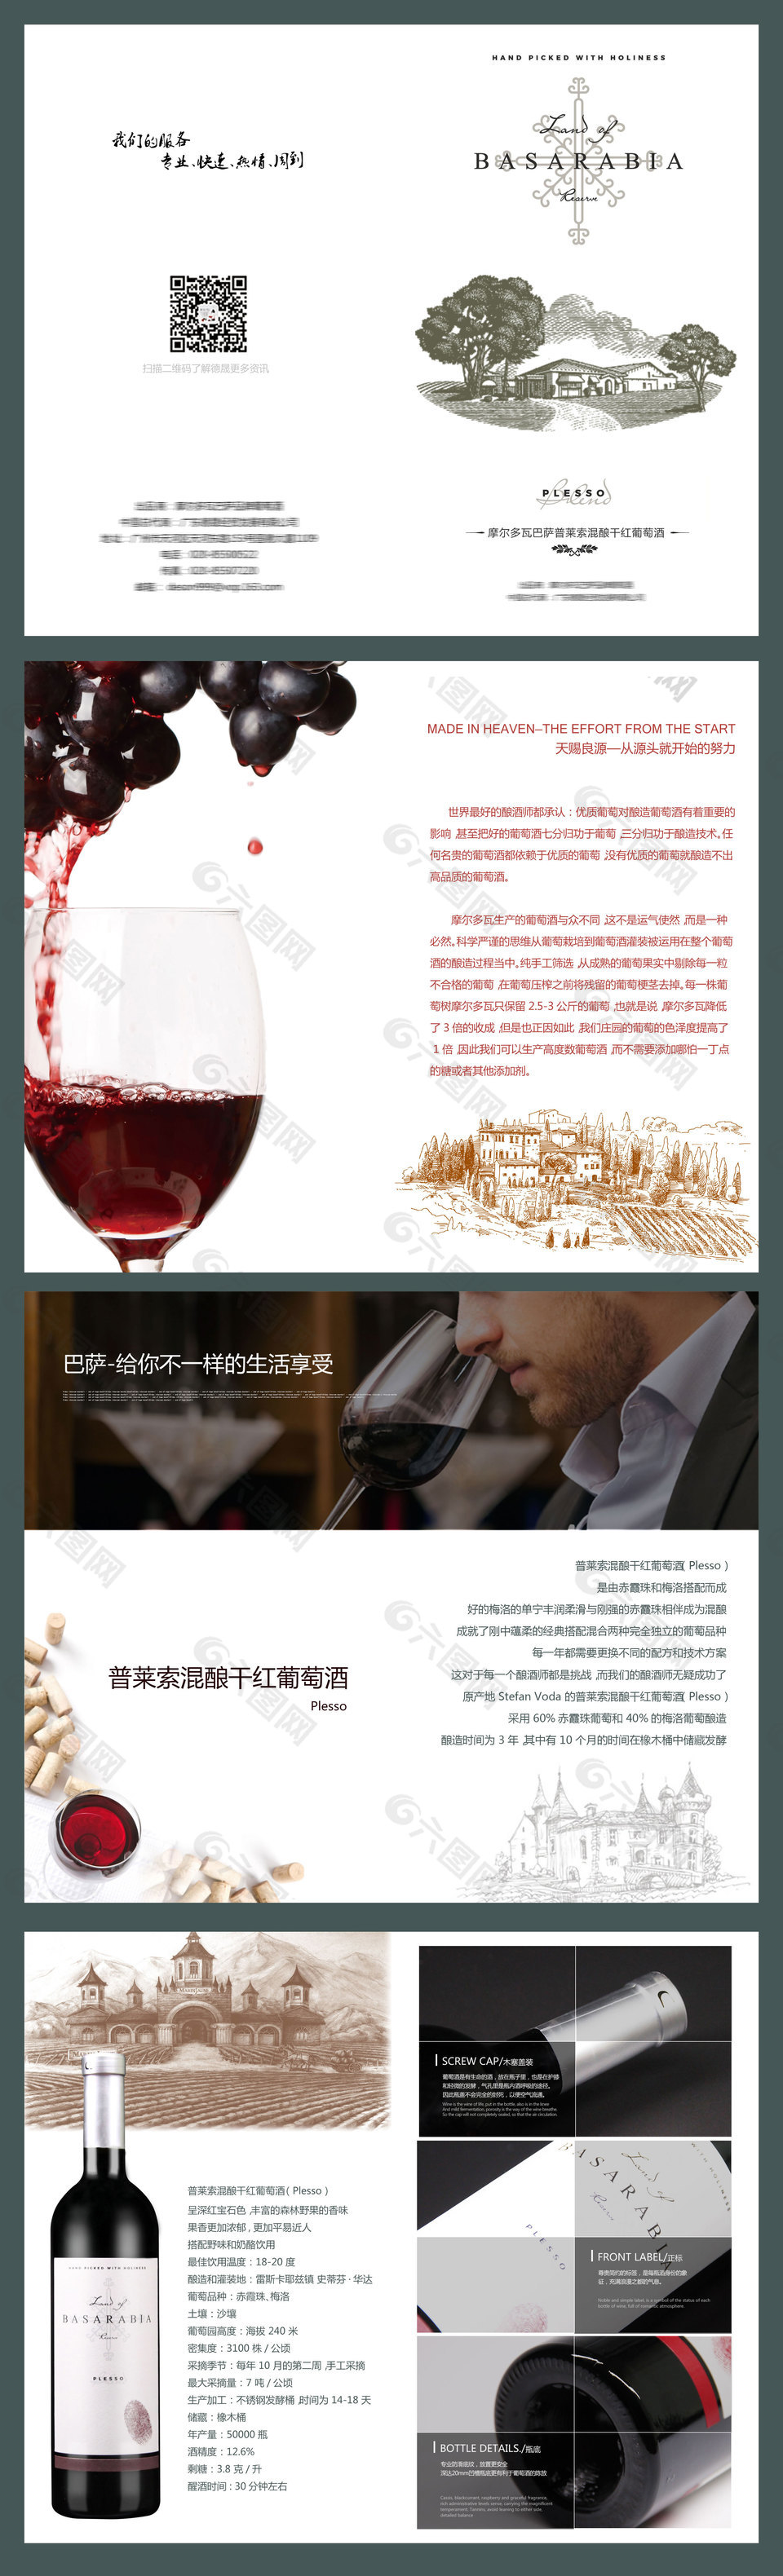 普莱索混酿干红葡萄酒画册